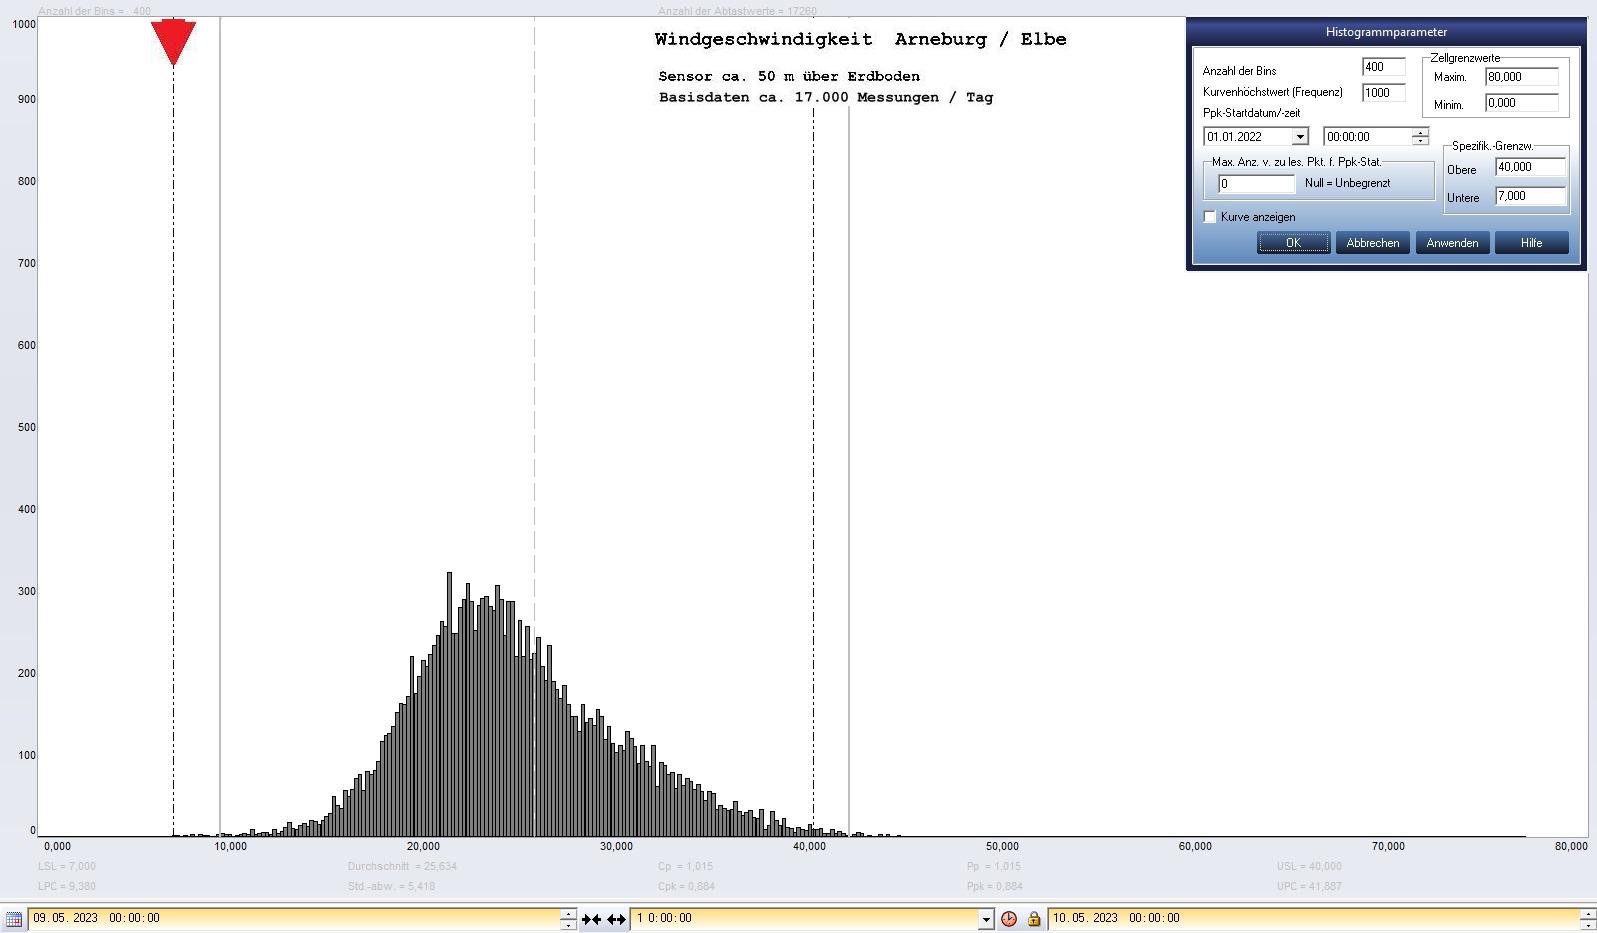 Arneburg Tages-Histogramm Winddaten, 09.05.2023
  Histogramm, Sensor auf Gebude, ca. 50 m ber Erdboden, Basis: 5s-Aufzeichnung